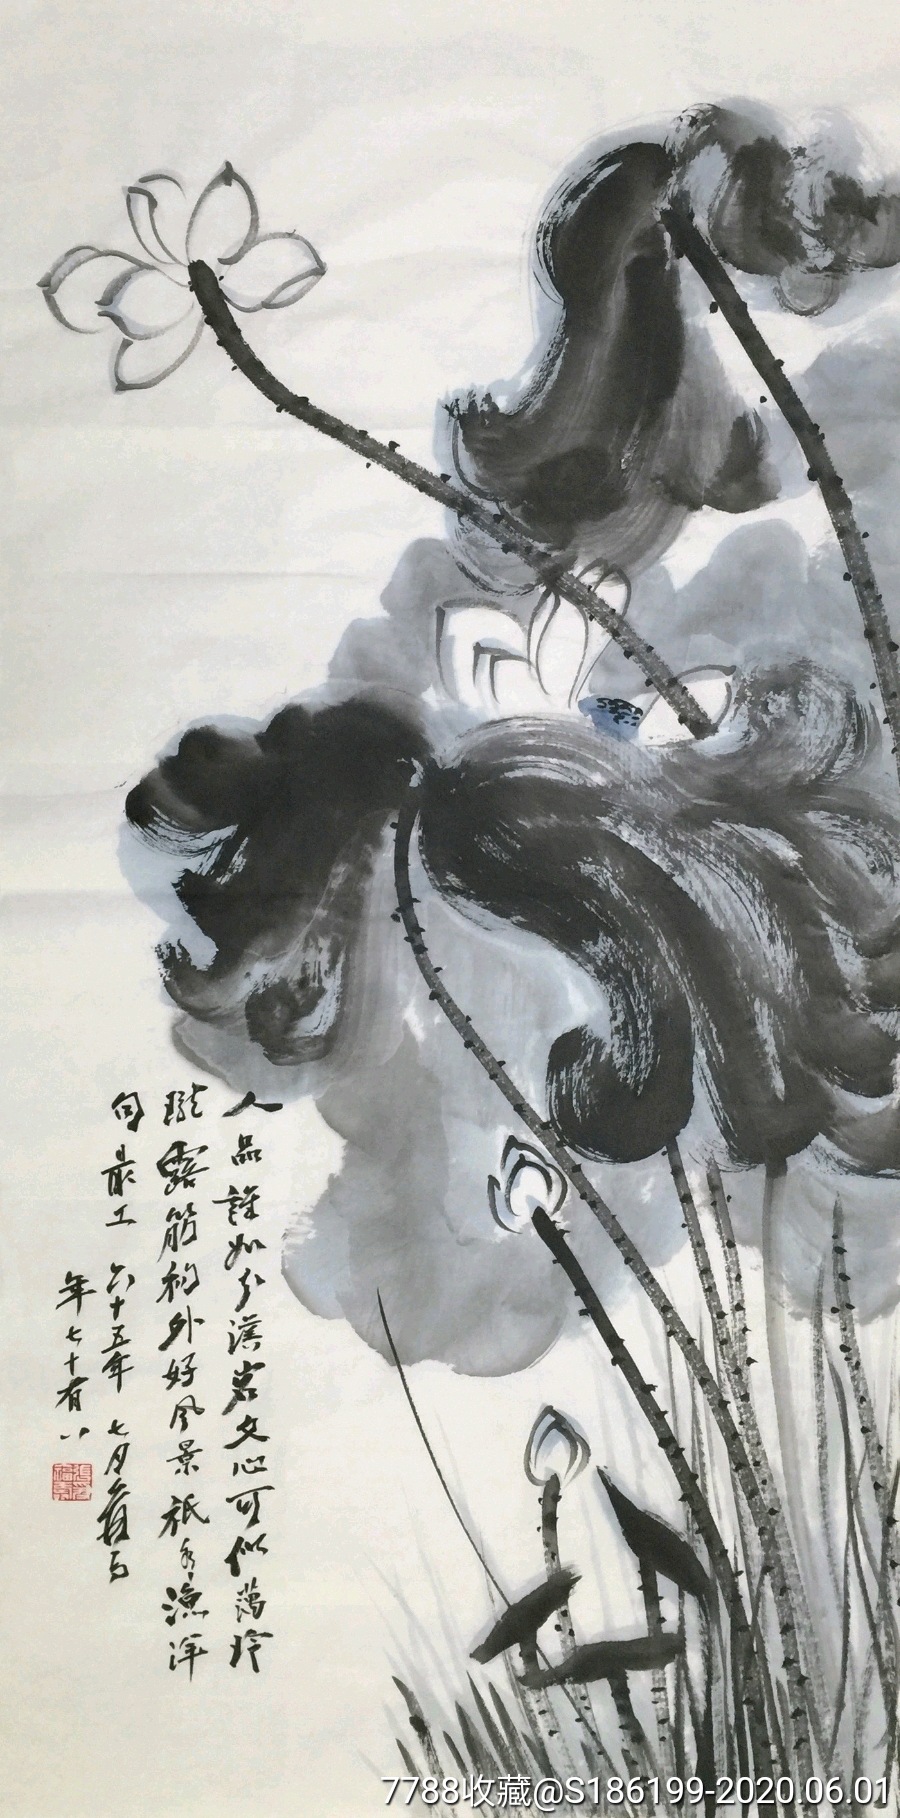 【张大千】中国著名国画大师,手绘三尺花鸟画2